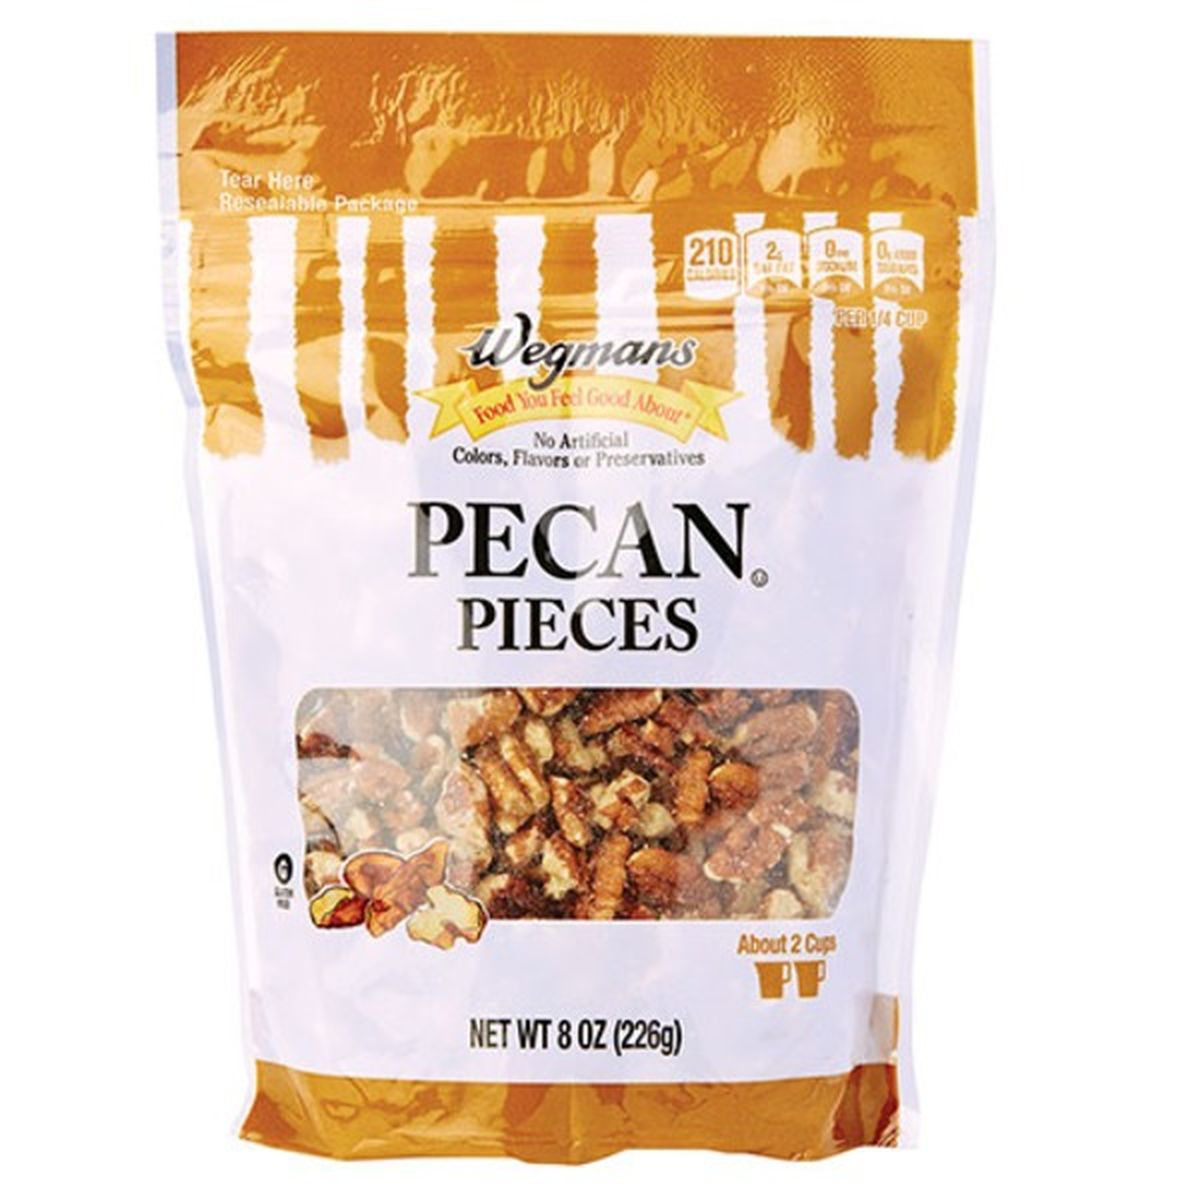 Calories in Wegmans Pecan Pieces